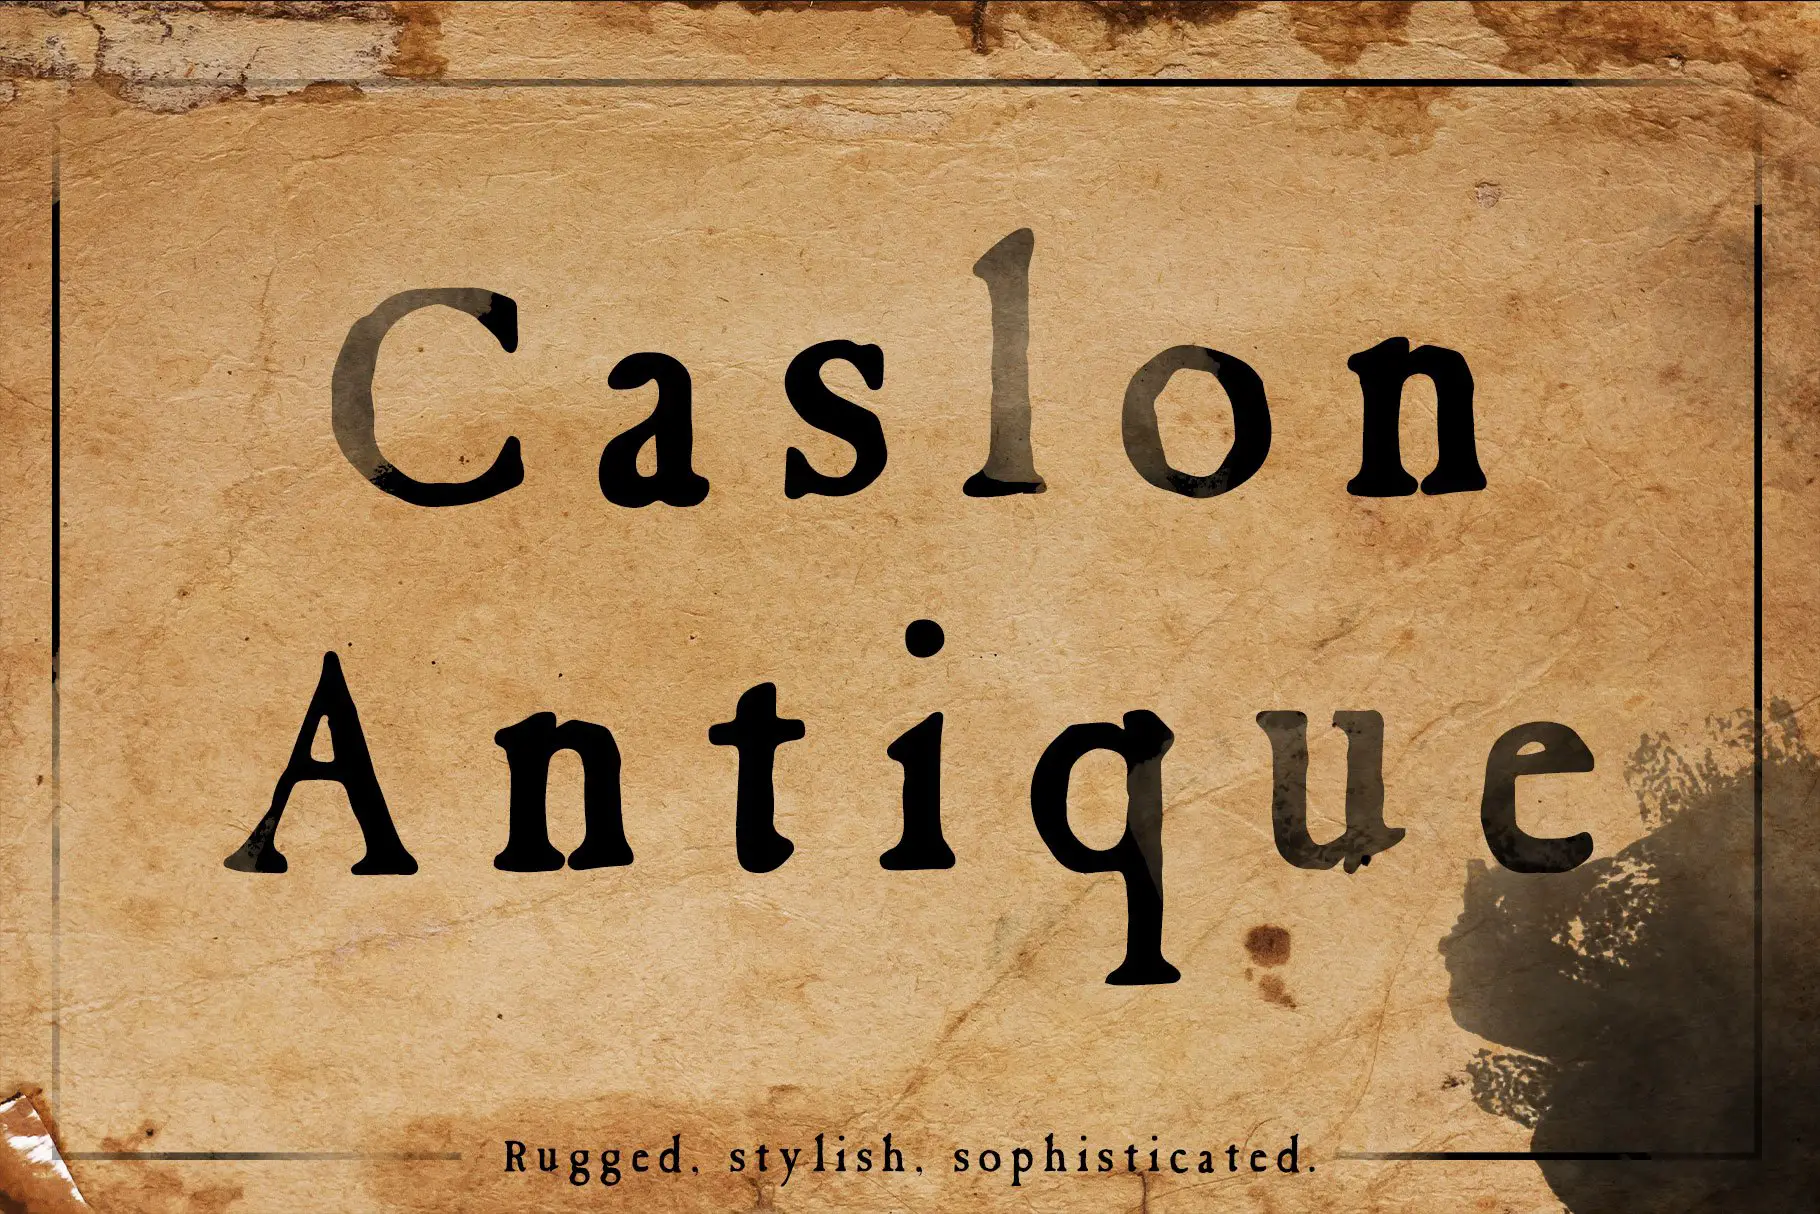 Caslon Antique - 